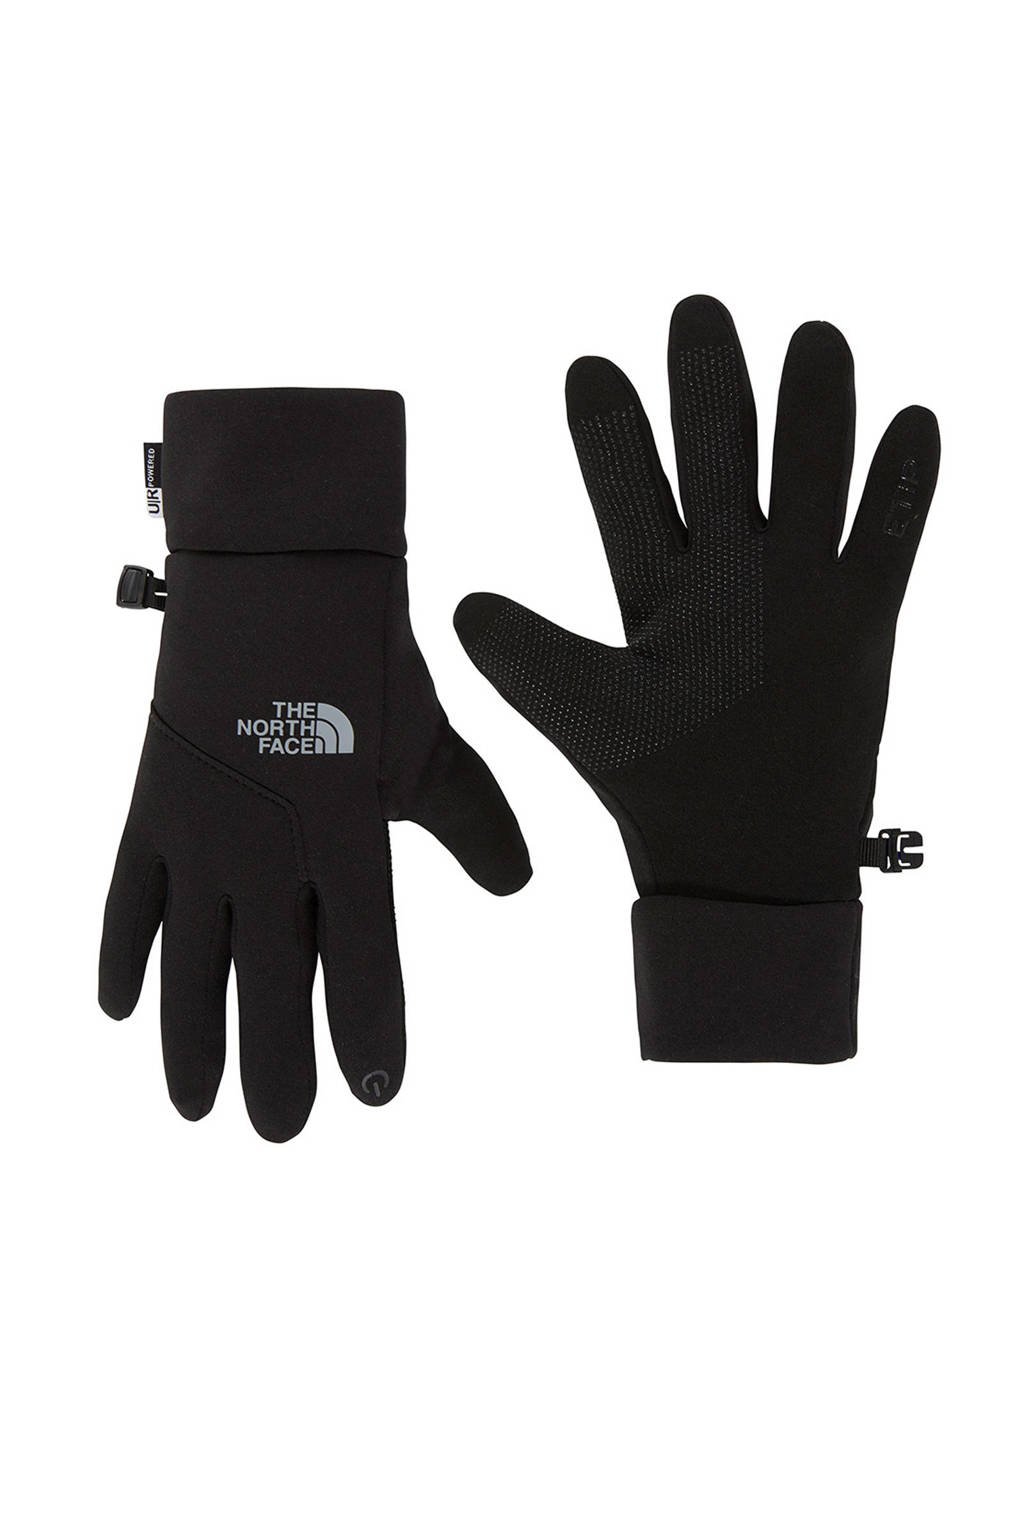 aantal Agressief straal The North Face Etip Glove fleece touchscreen handschoenen zwart | wehkamp